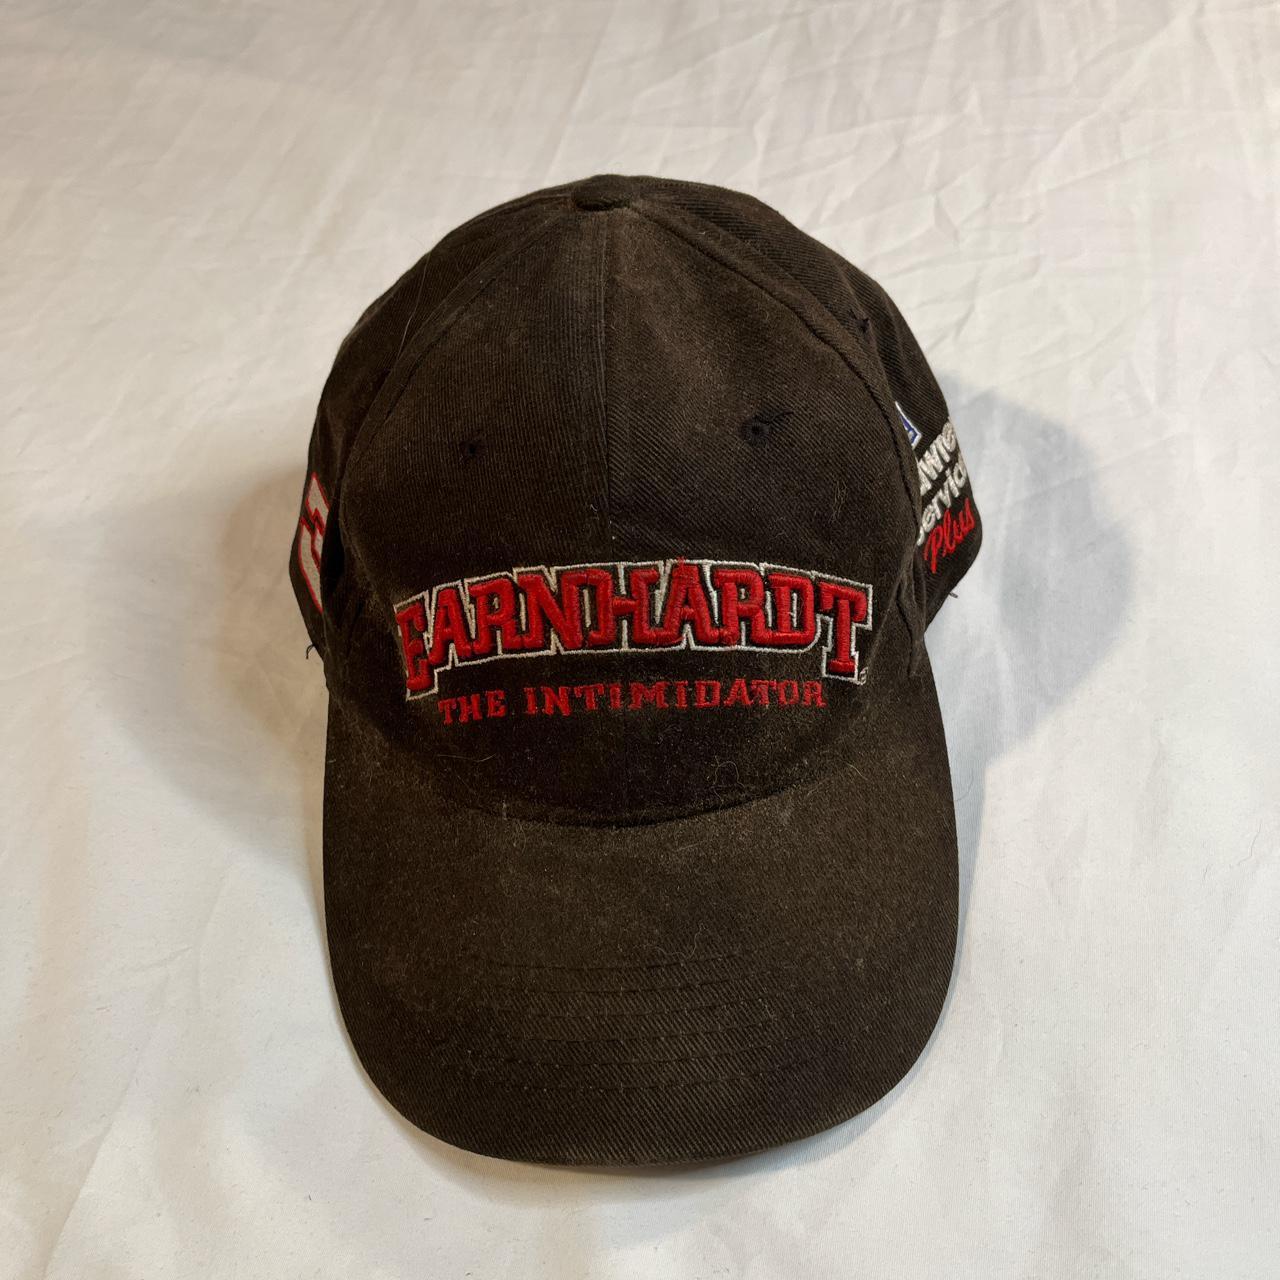 Vintage 90’s Dale Earnhardt ‘The Intimidator’ Hat... - Depop